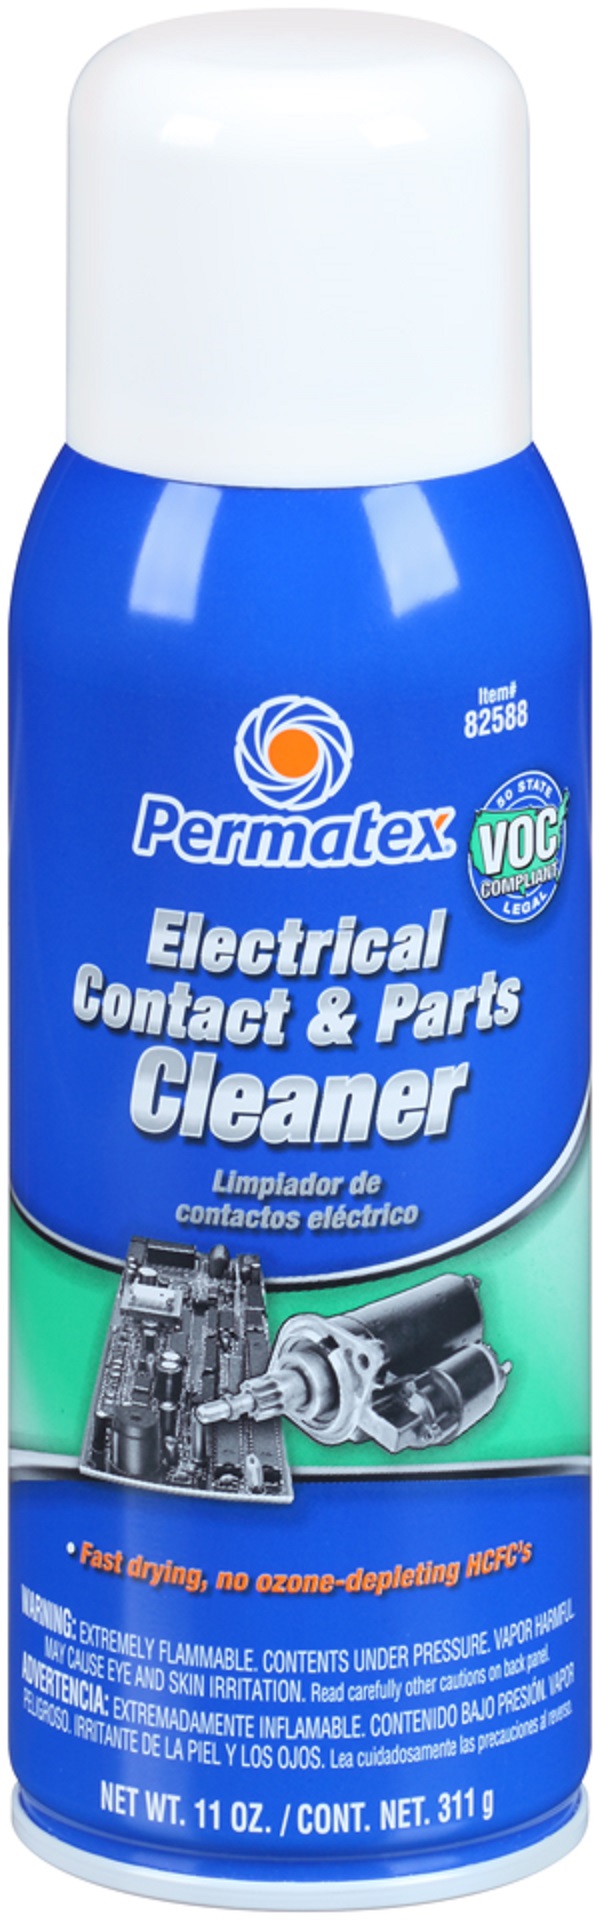 Очиститель электроконтактов и печатных плат Permatex 82588 аэрозоль  311 гр